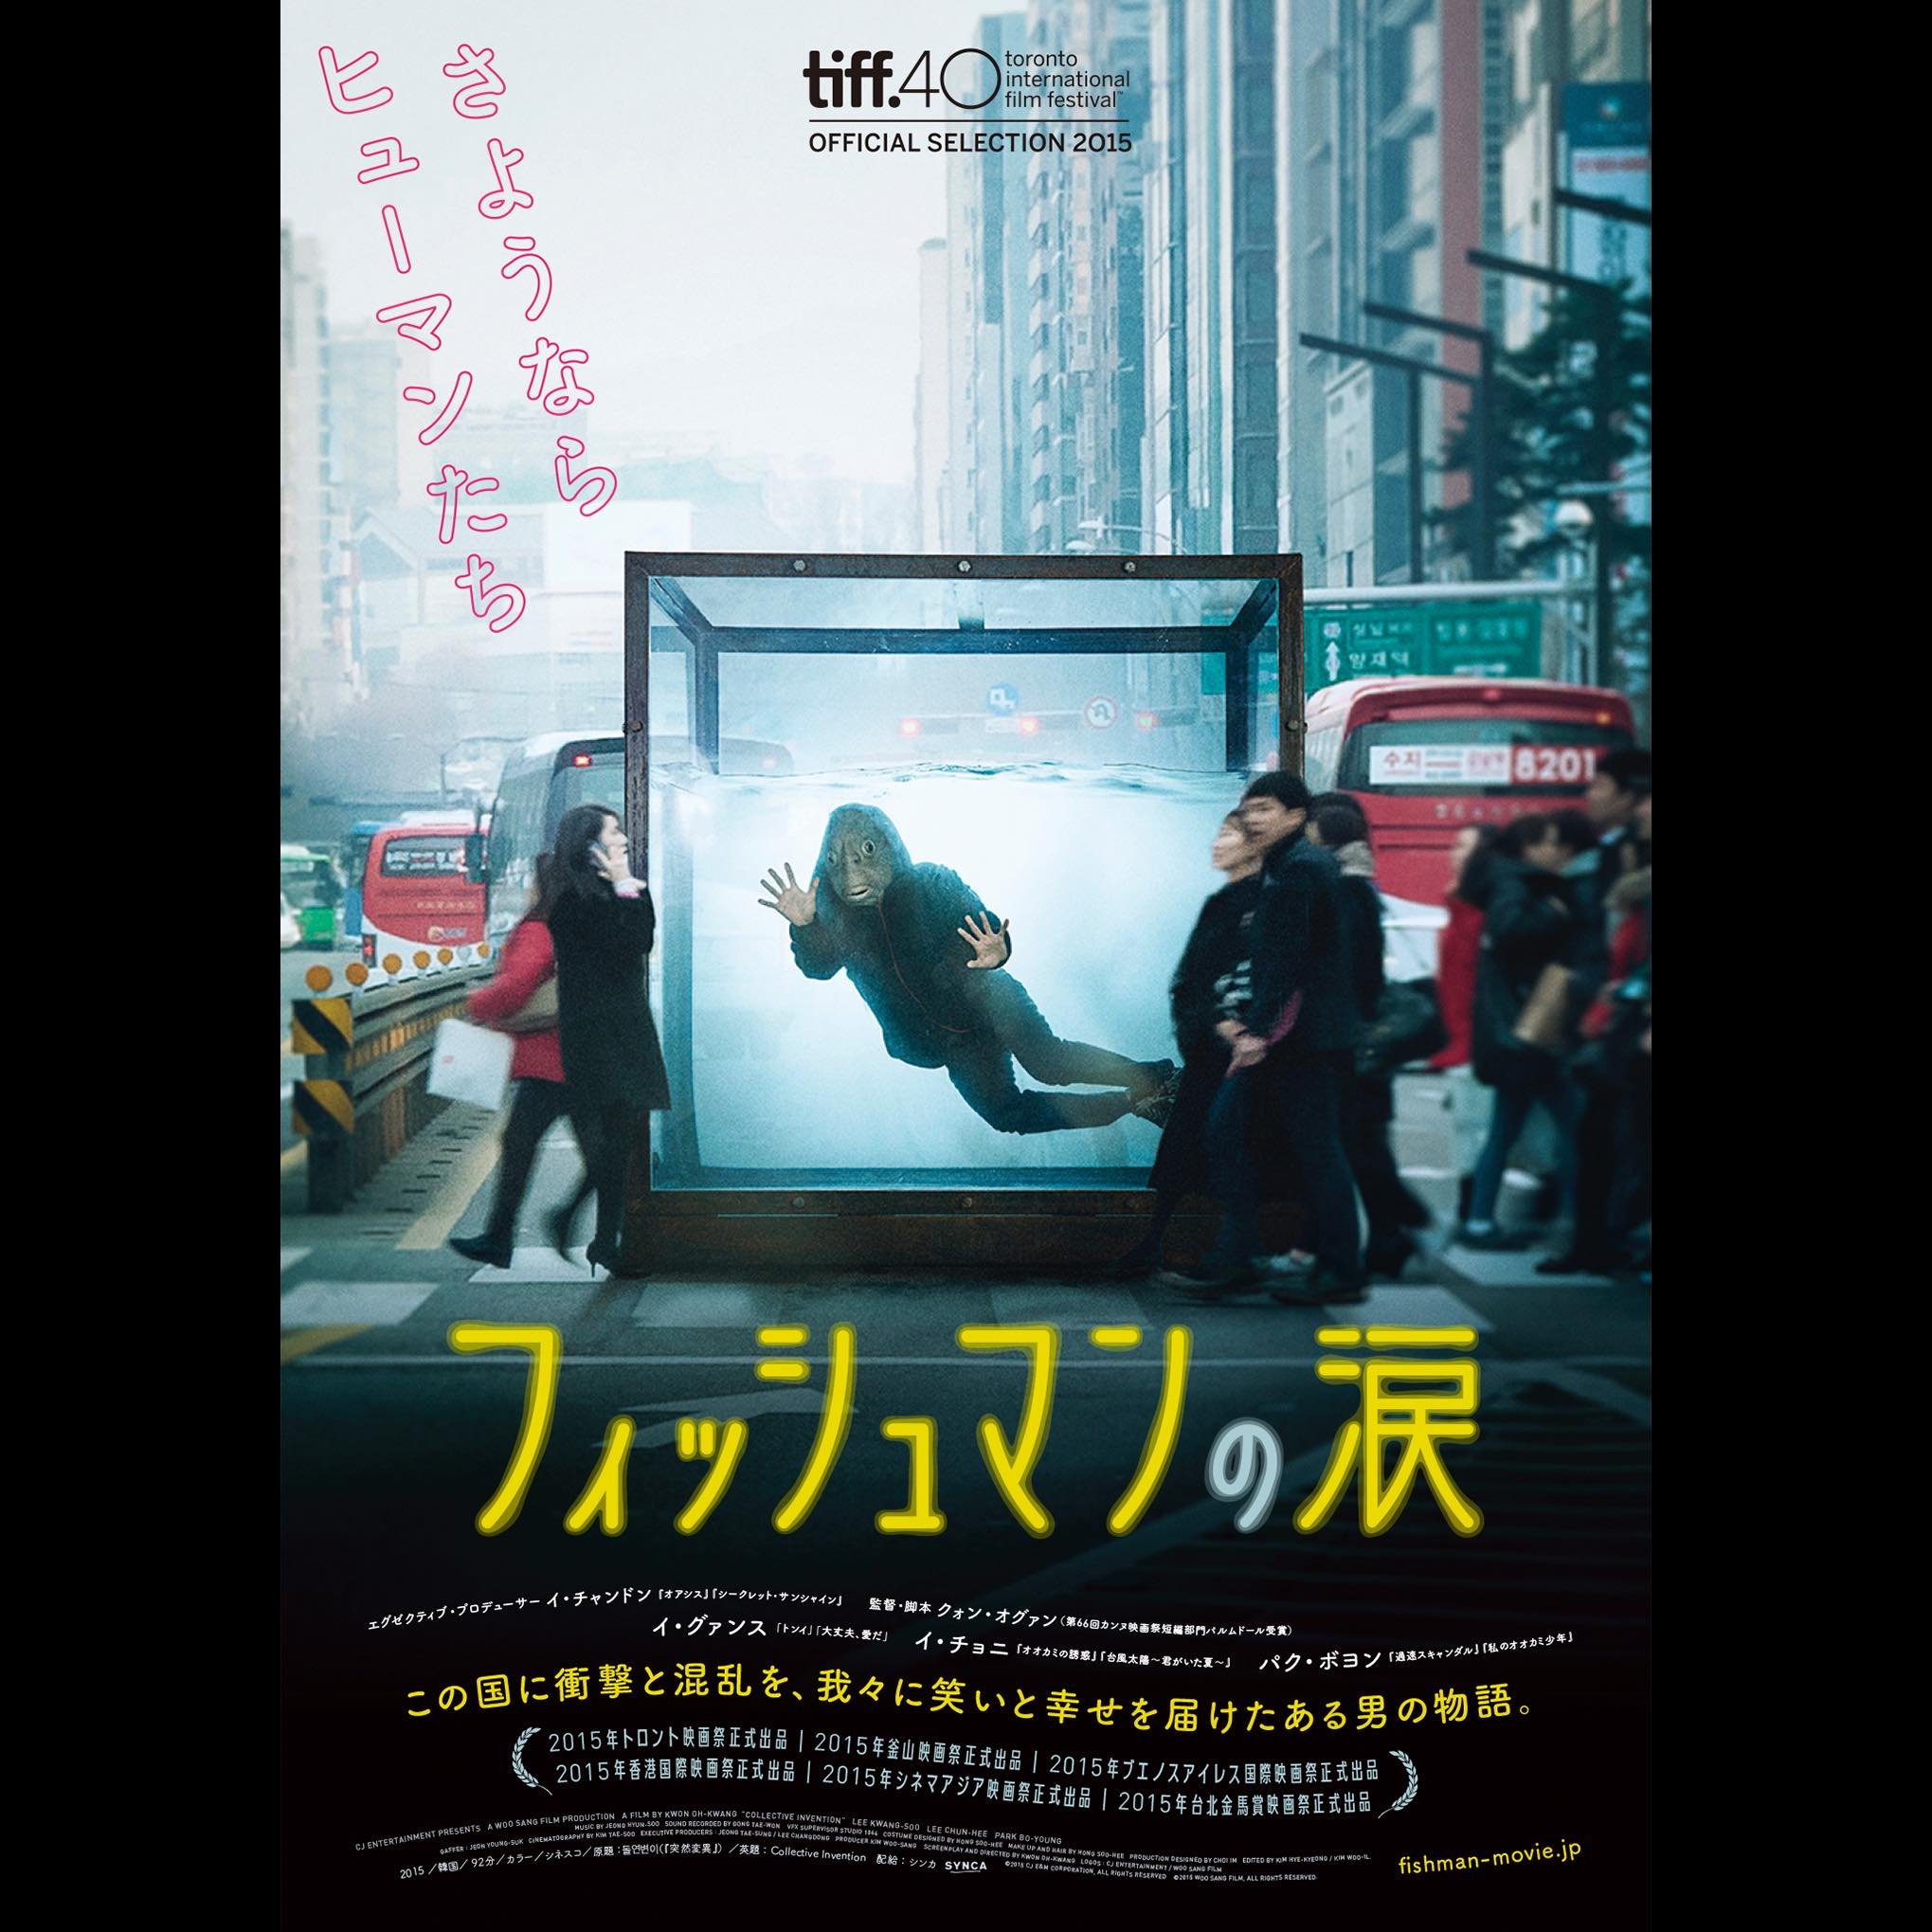 薬の副作用で 魚人間 に 青春モンスター映画 フィッシュマンの涙 日本公開決定 Real Sound リアルサウンド 映画部